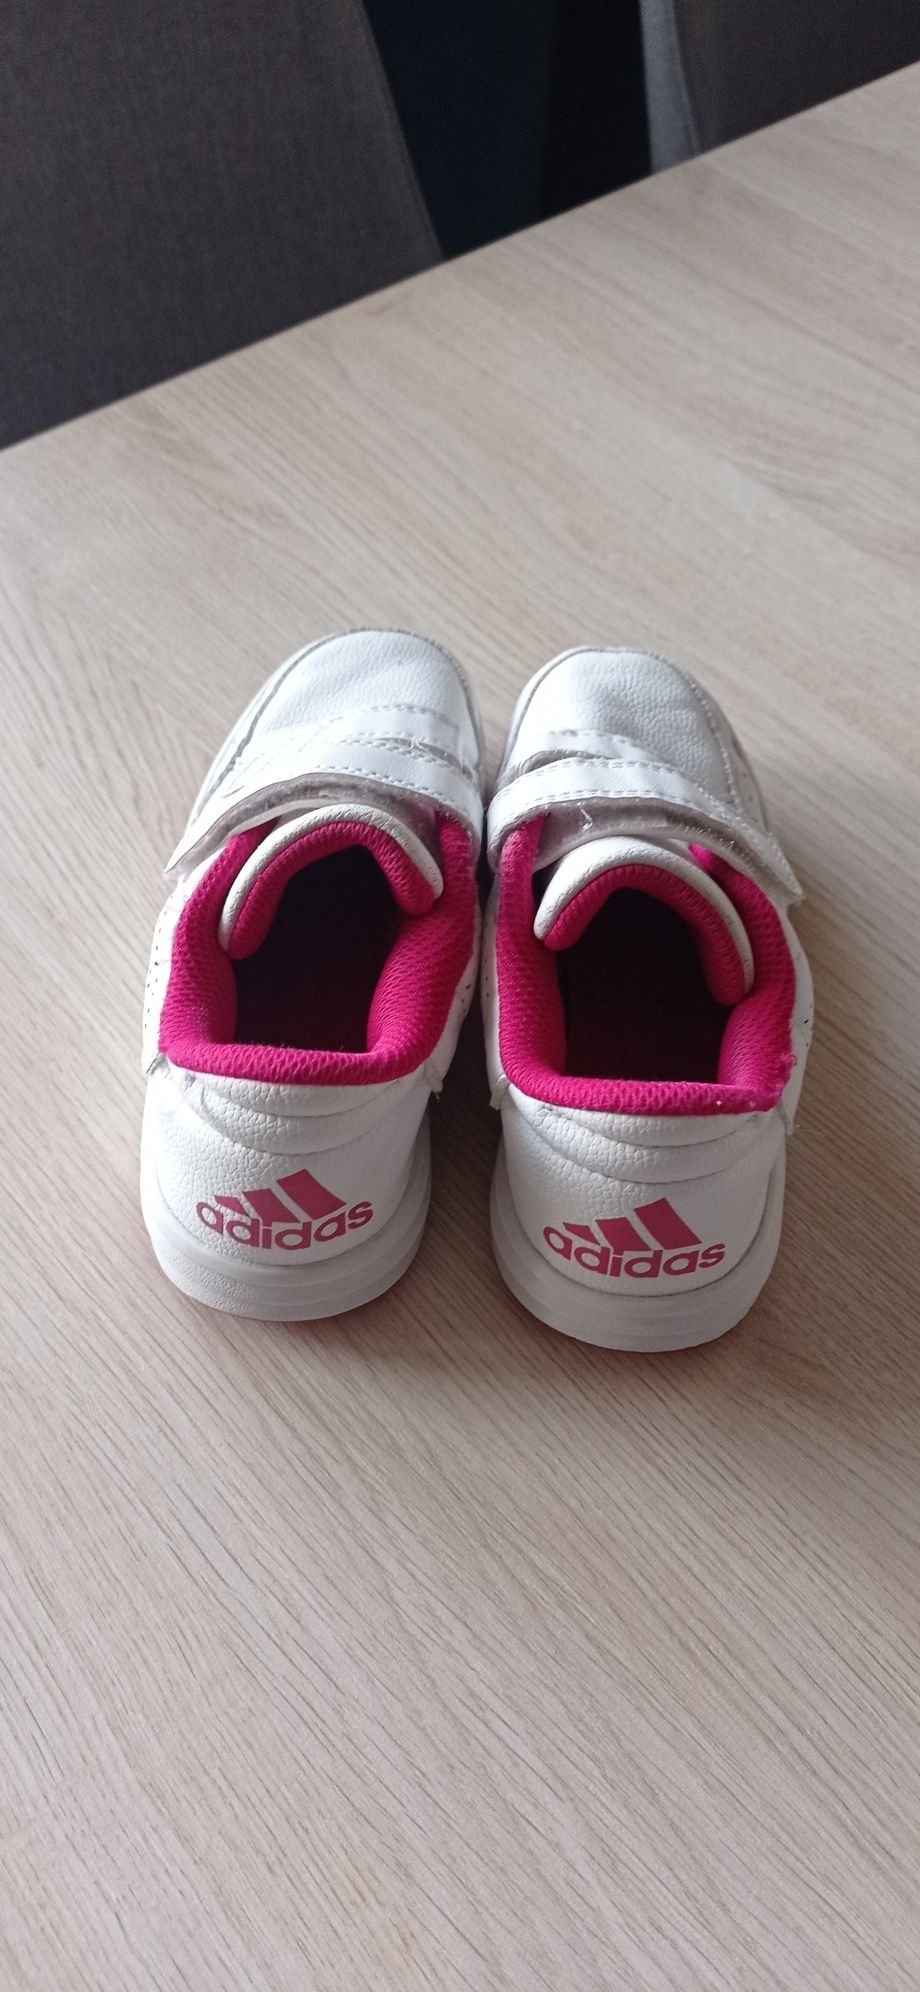 Buty dla dziewczynki Adidas 28. Wkładka 18cm .